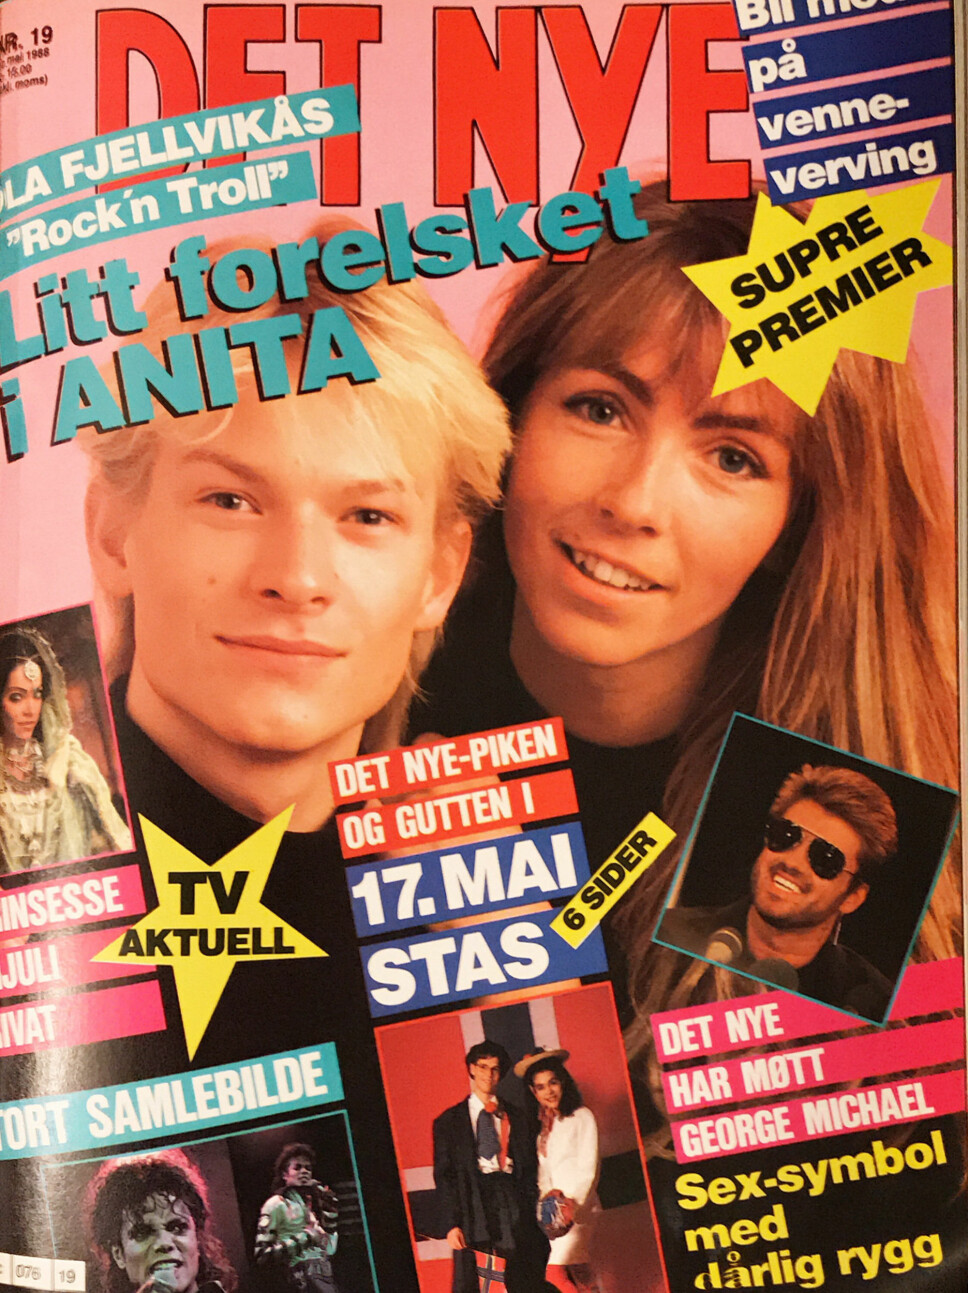 1988: Ola Fjellvikås og Anita Skorgan på forsiden.